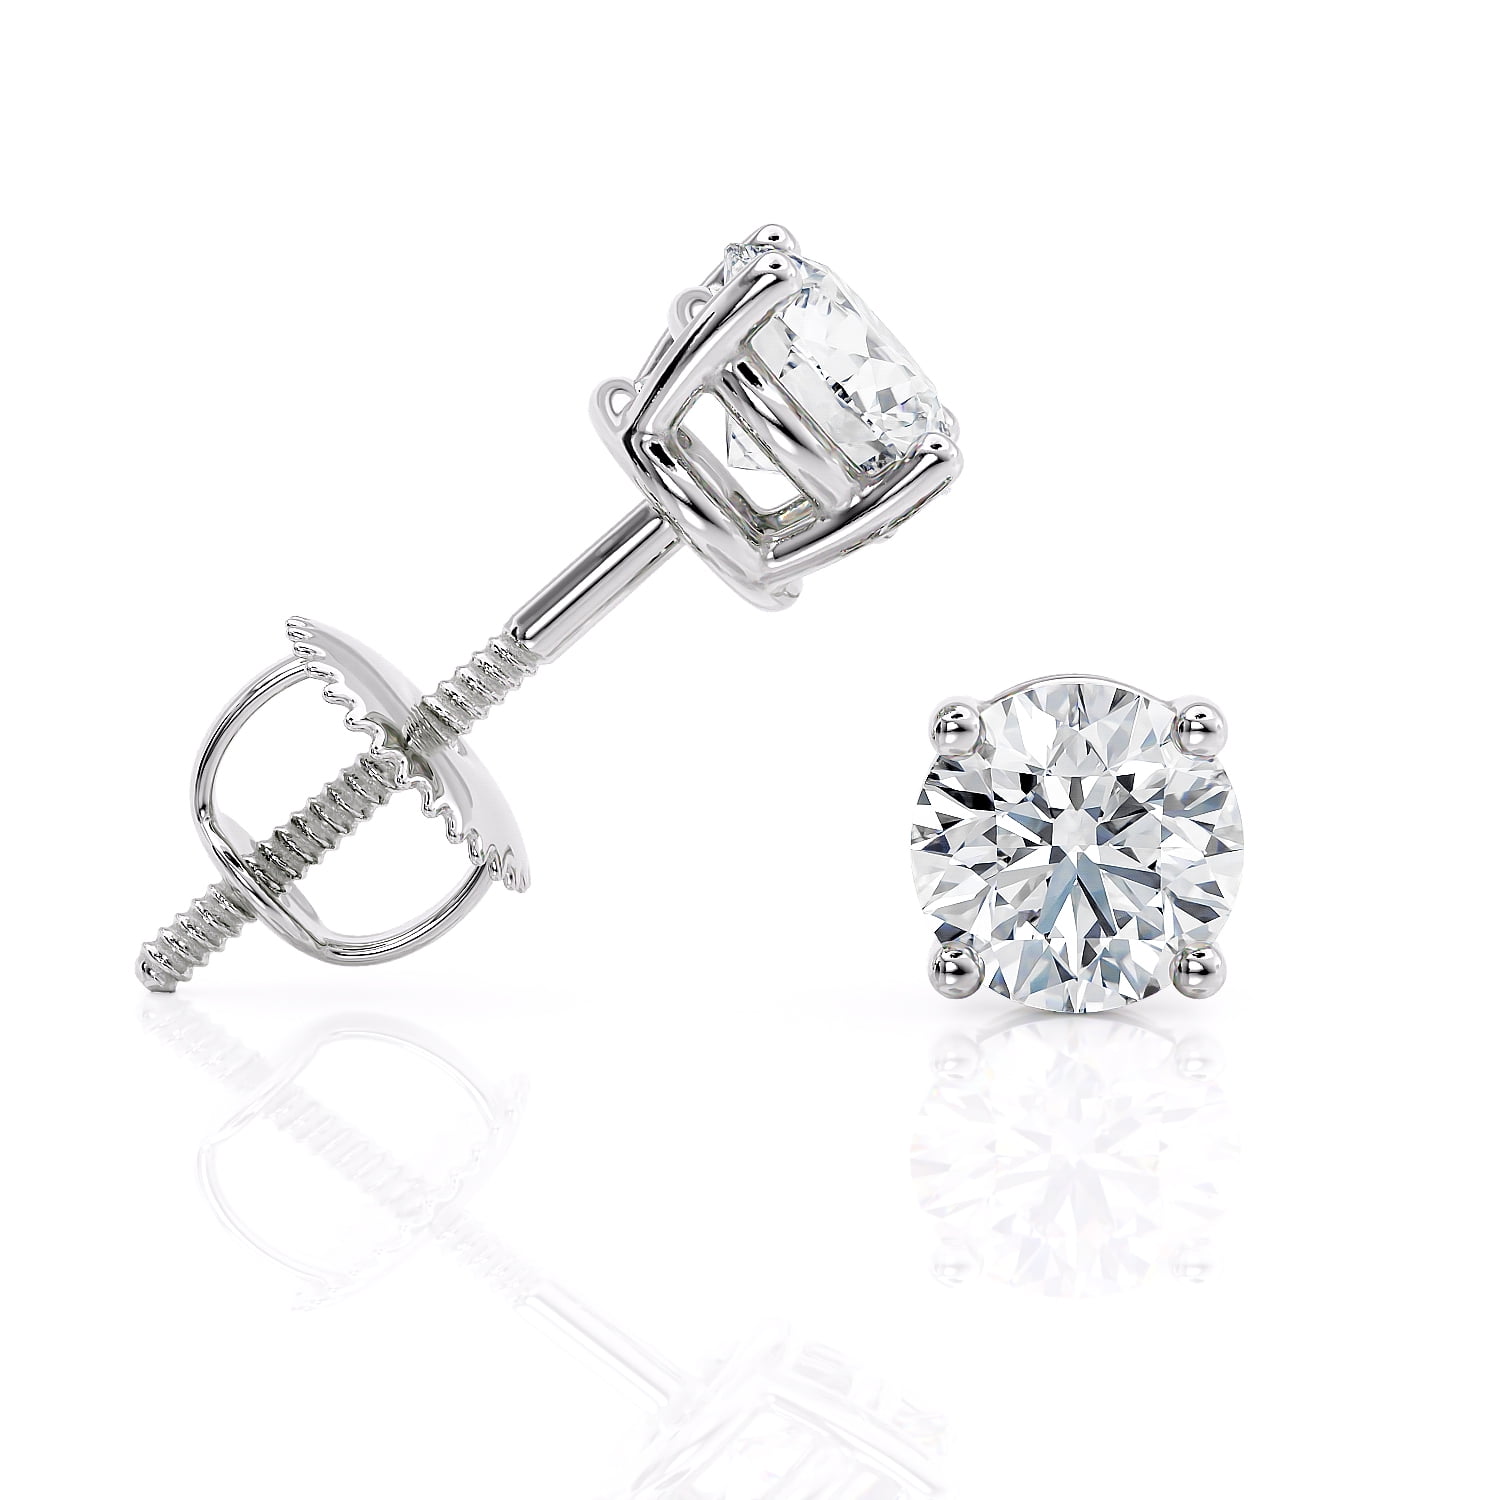 Buy Kanak jewels Valentine Stainless Steel Multicolor Black Screw Bali Stud  earrings KJNT40 Online at Best Prices in India  JioMart